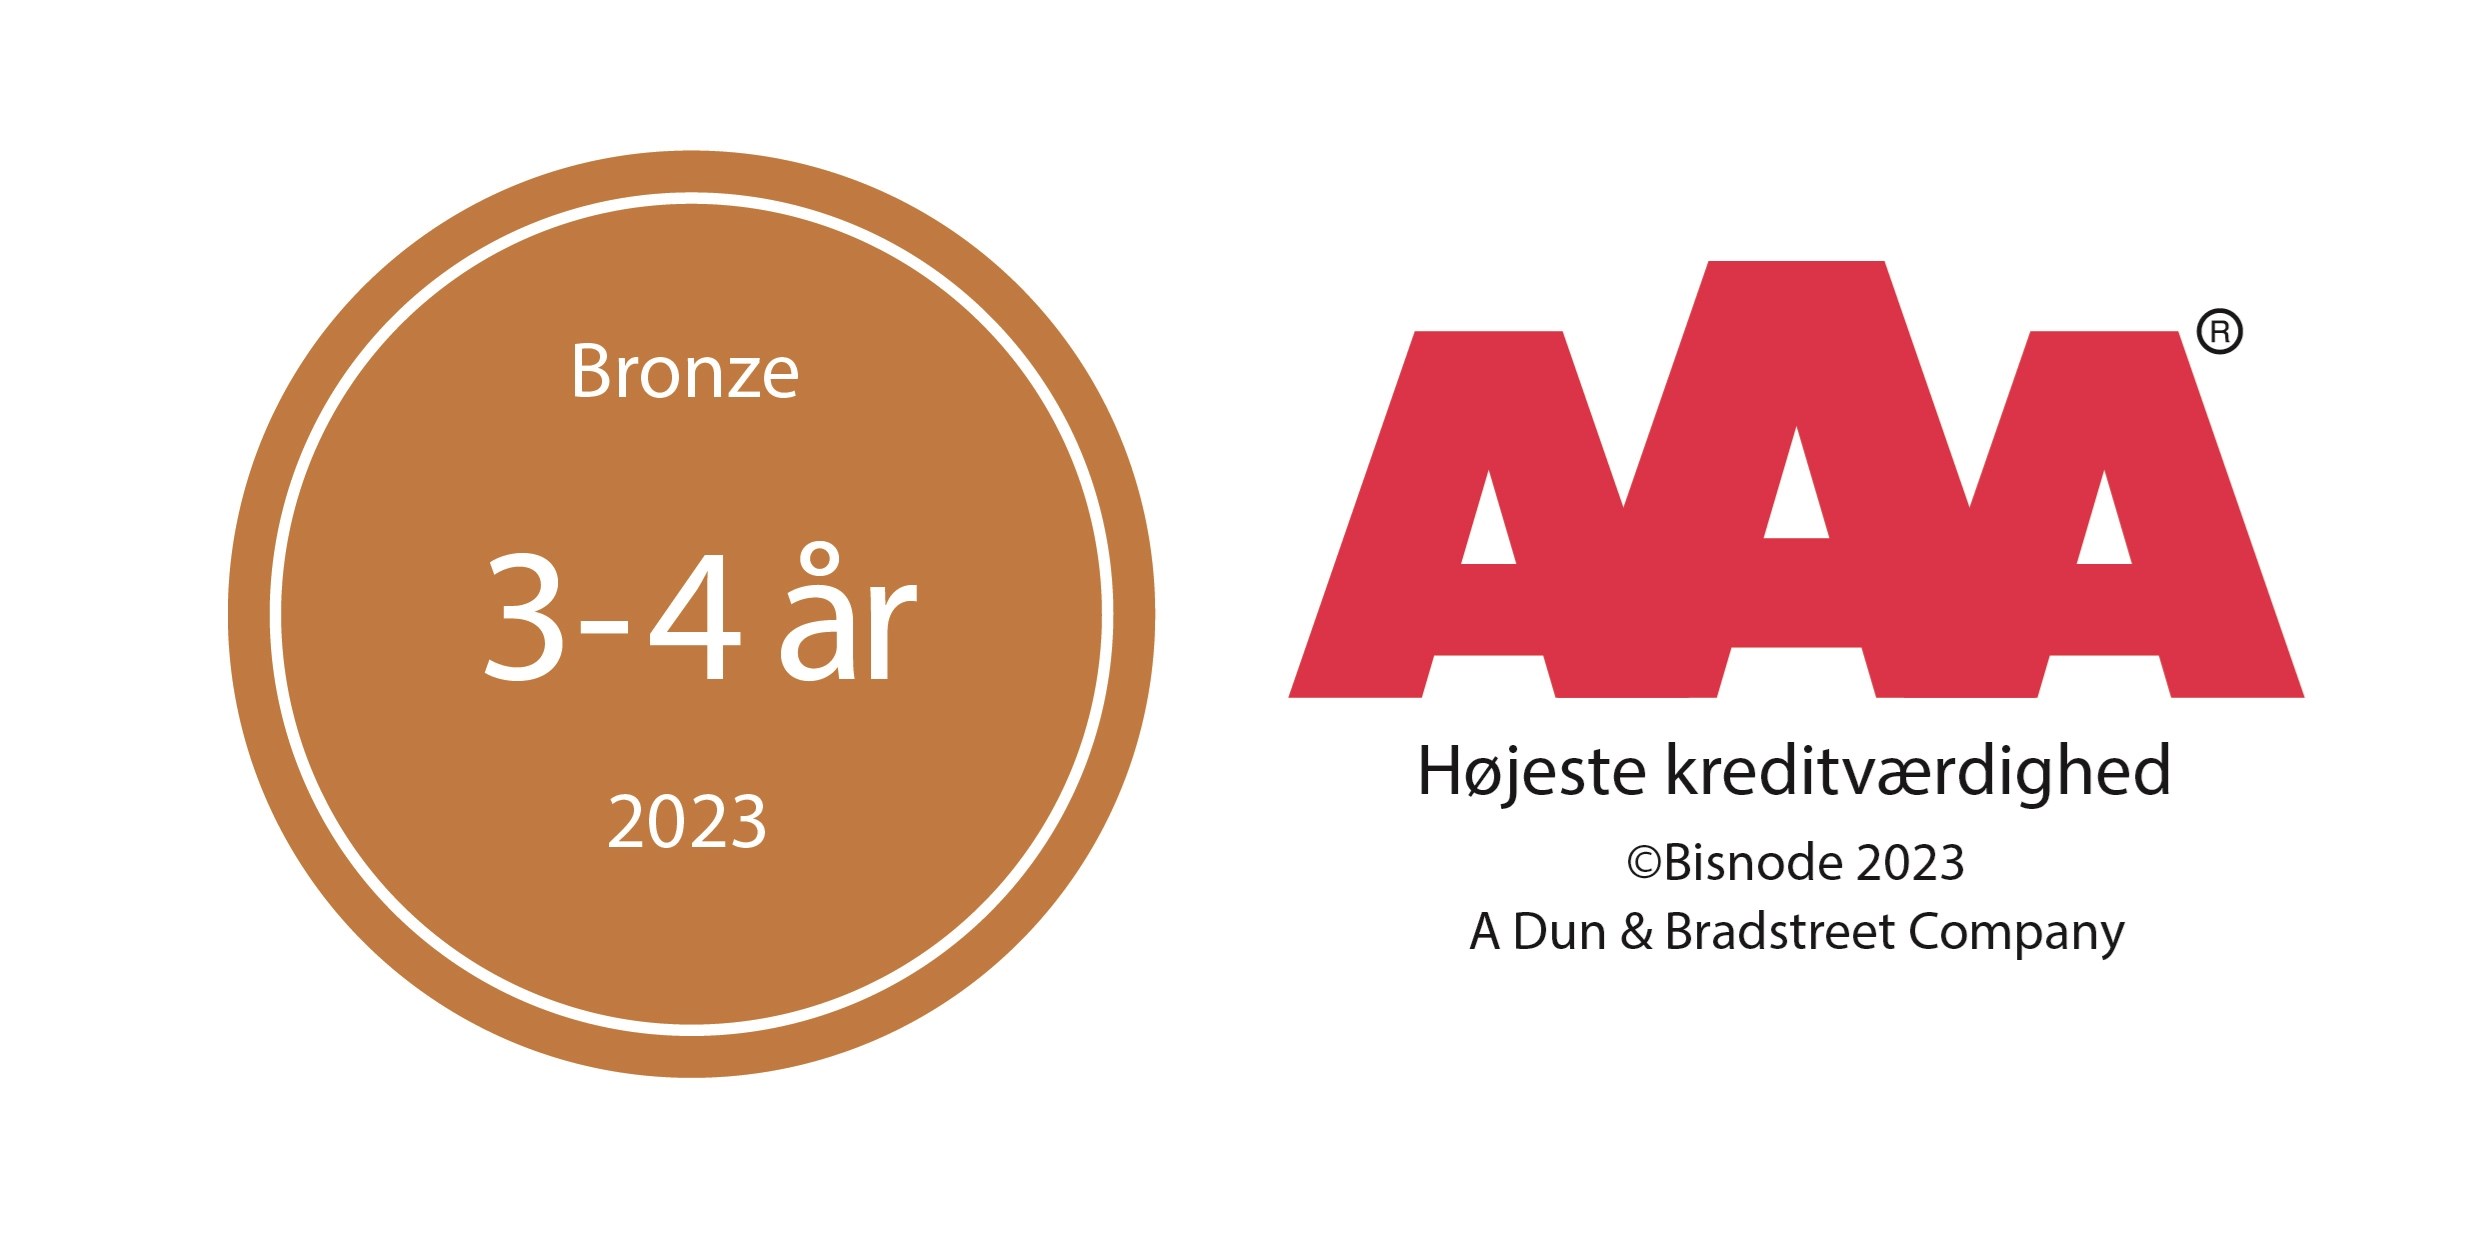 aaa - bronze - 2023 - dk